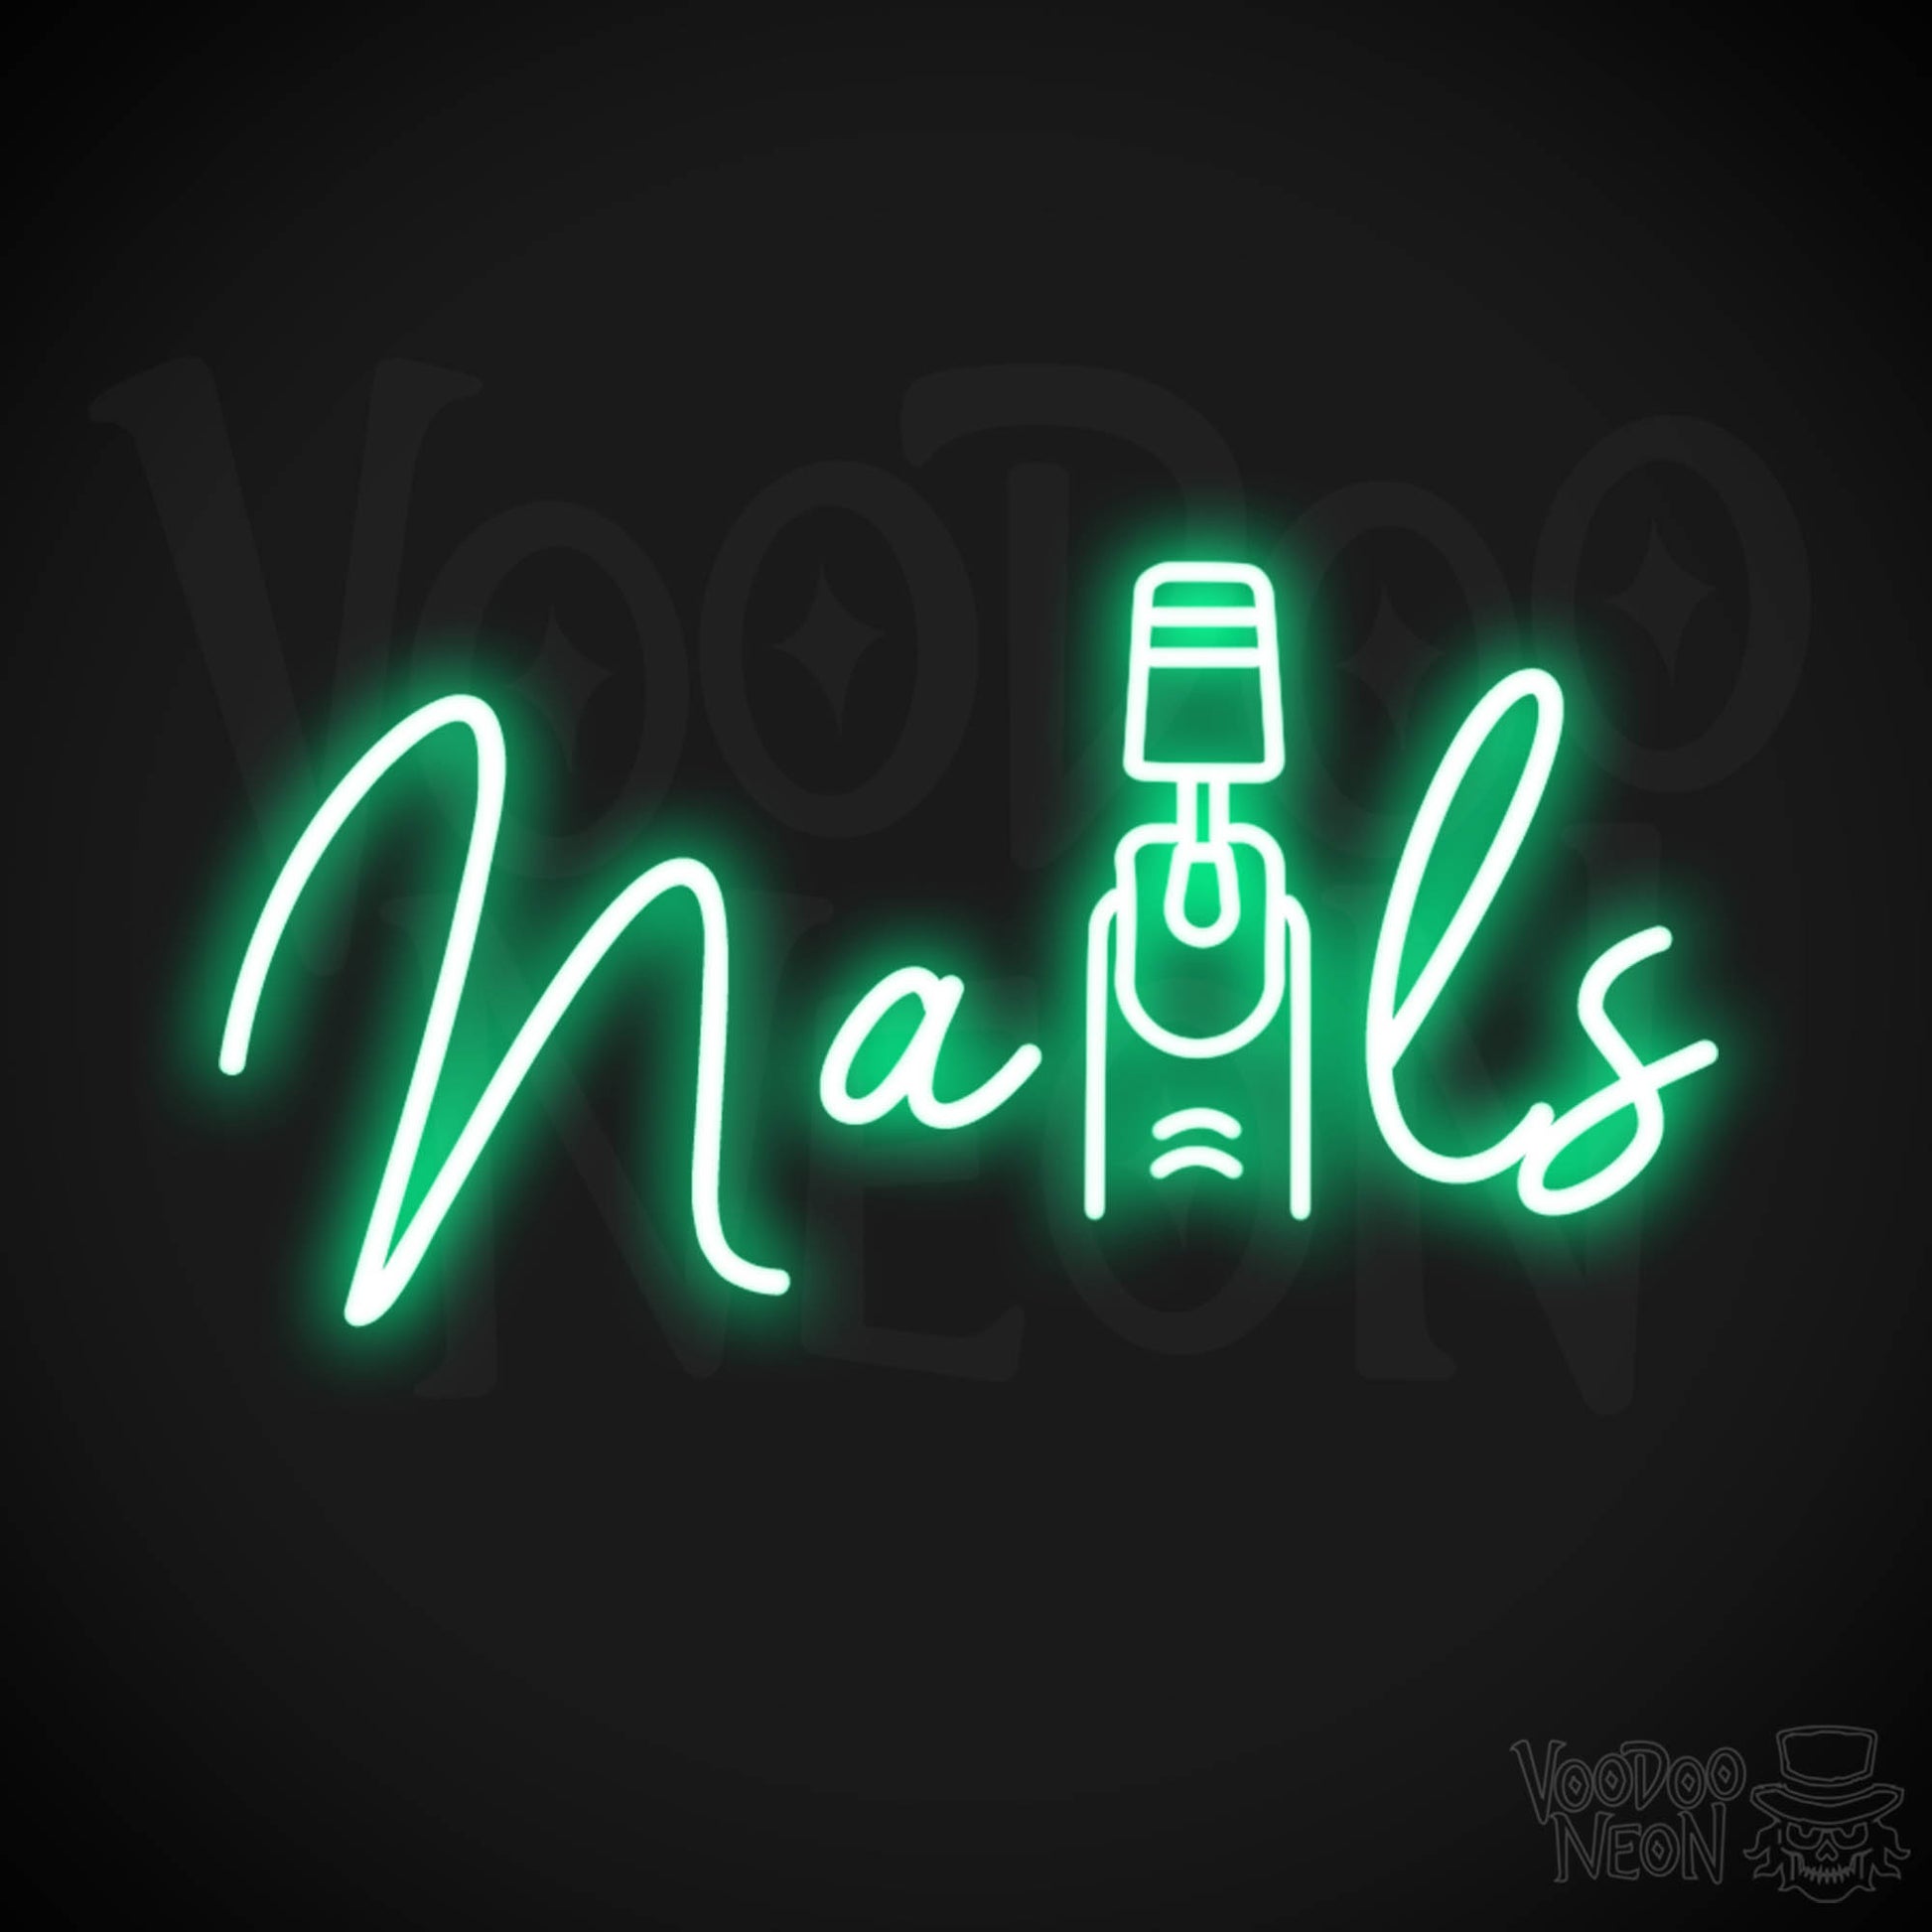 Nails Neon Sign - Nail Salon Sign - Neon Nails Sign - Nail Salon Wall Art - Color Green